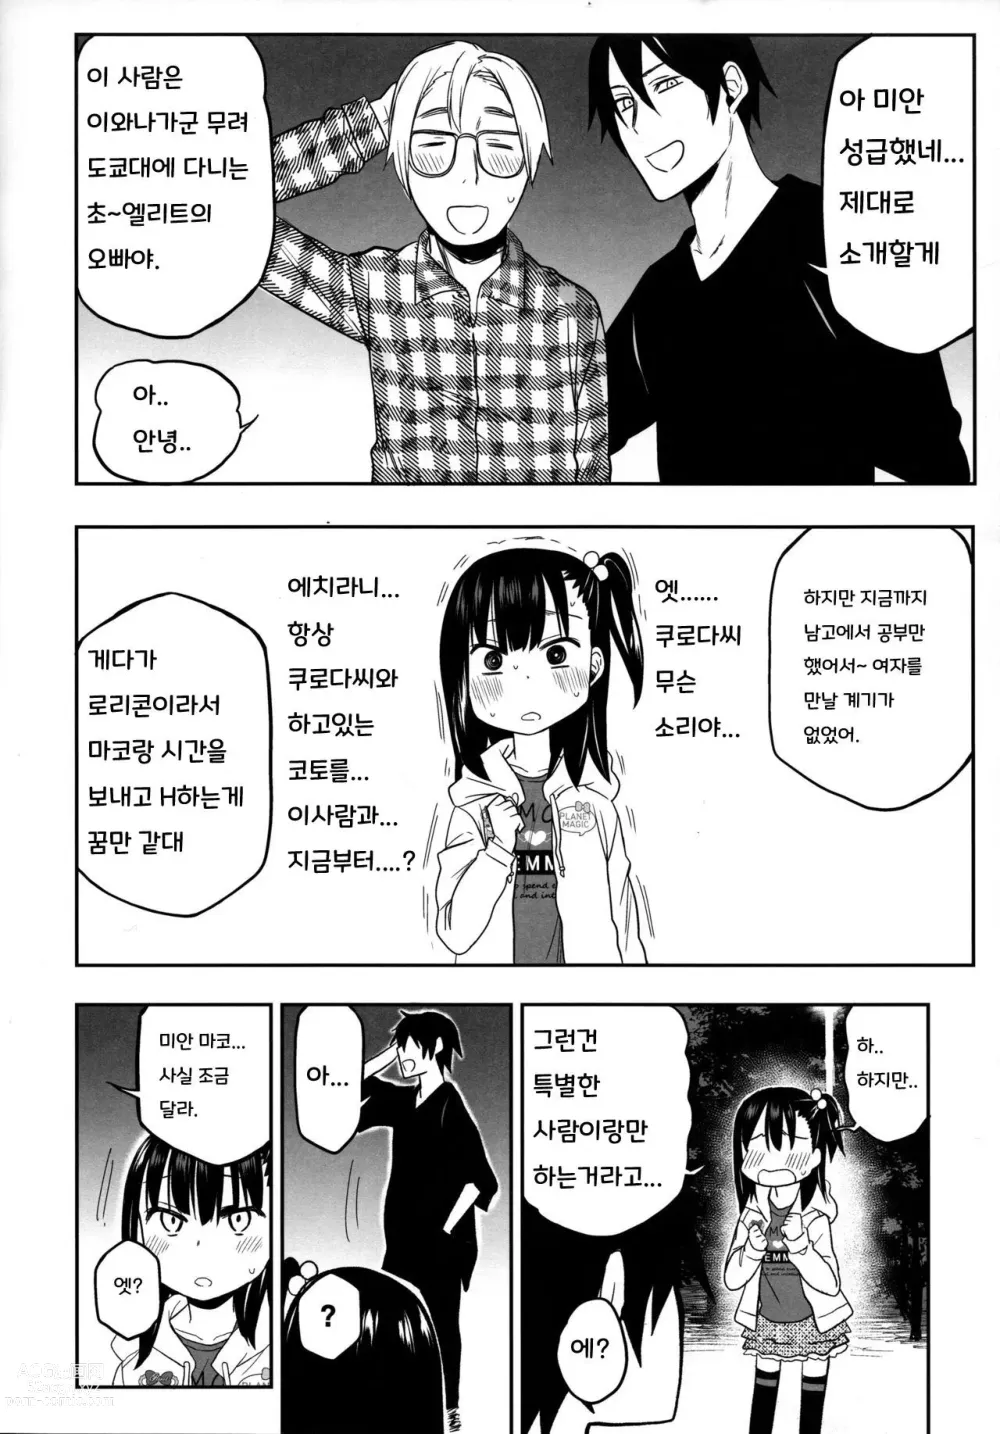 Page 6 of doujinshi Tonari no Mako-chan Season 2 Vol. 2